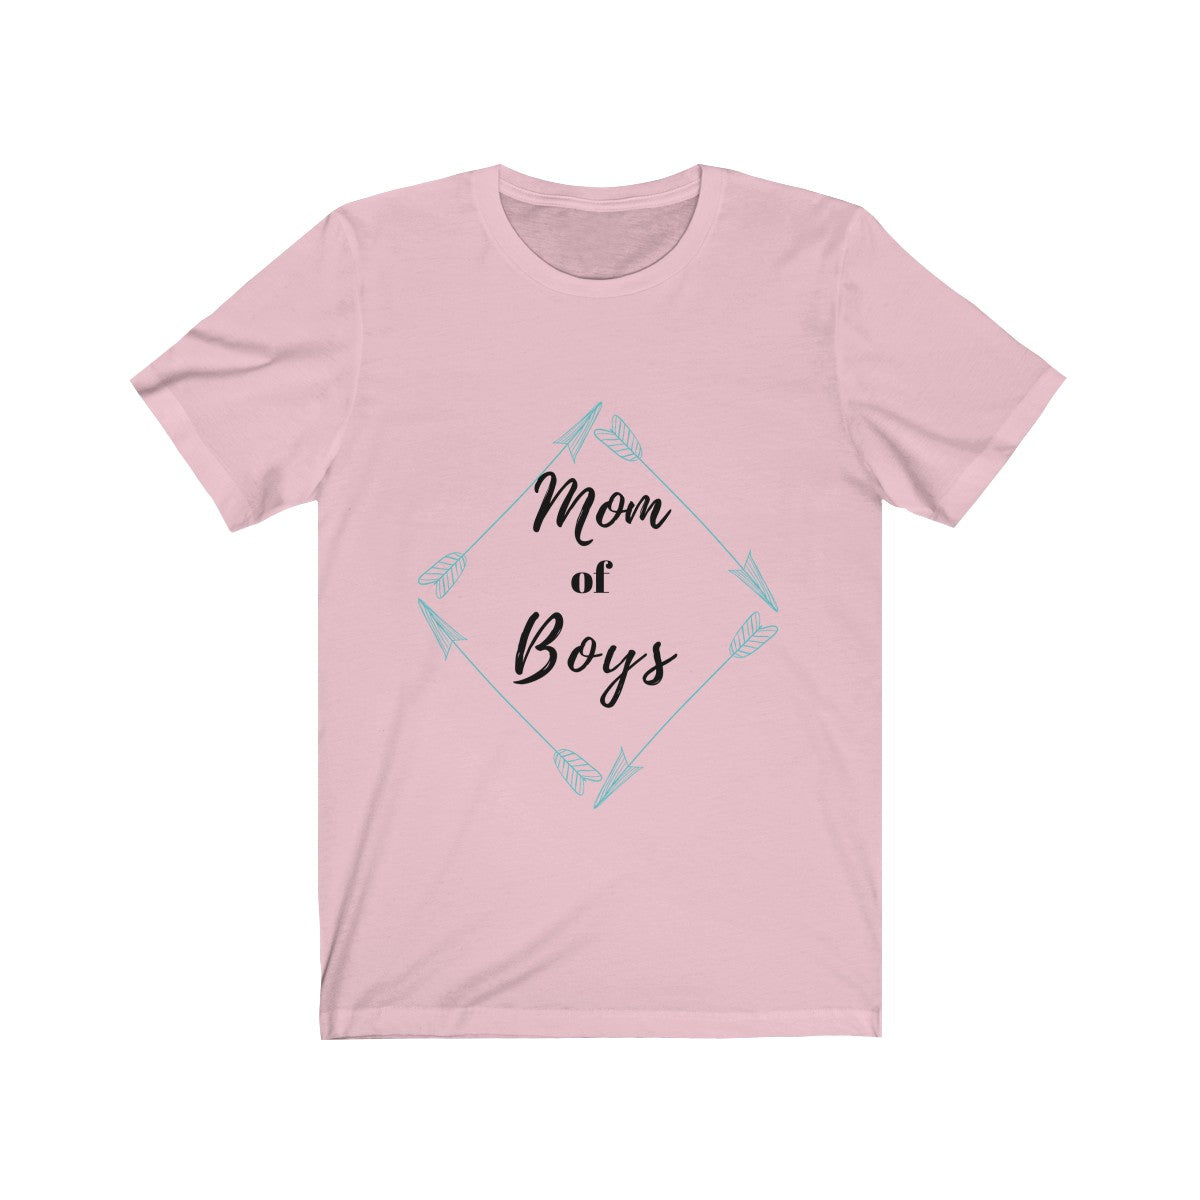 Mom of Boys Tee| Mom of Boys Tshirt| Mom of Boys Shirt